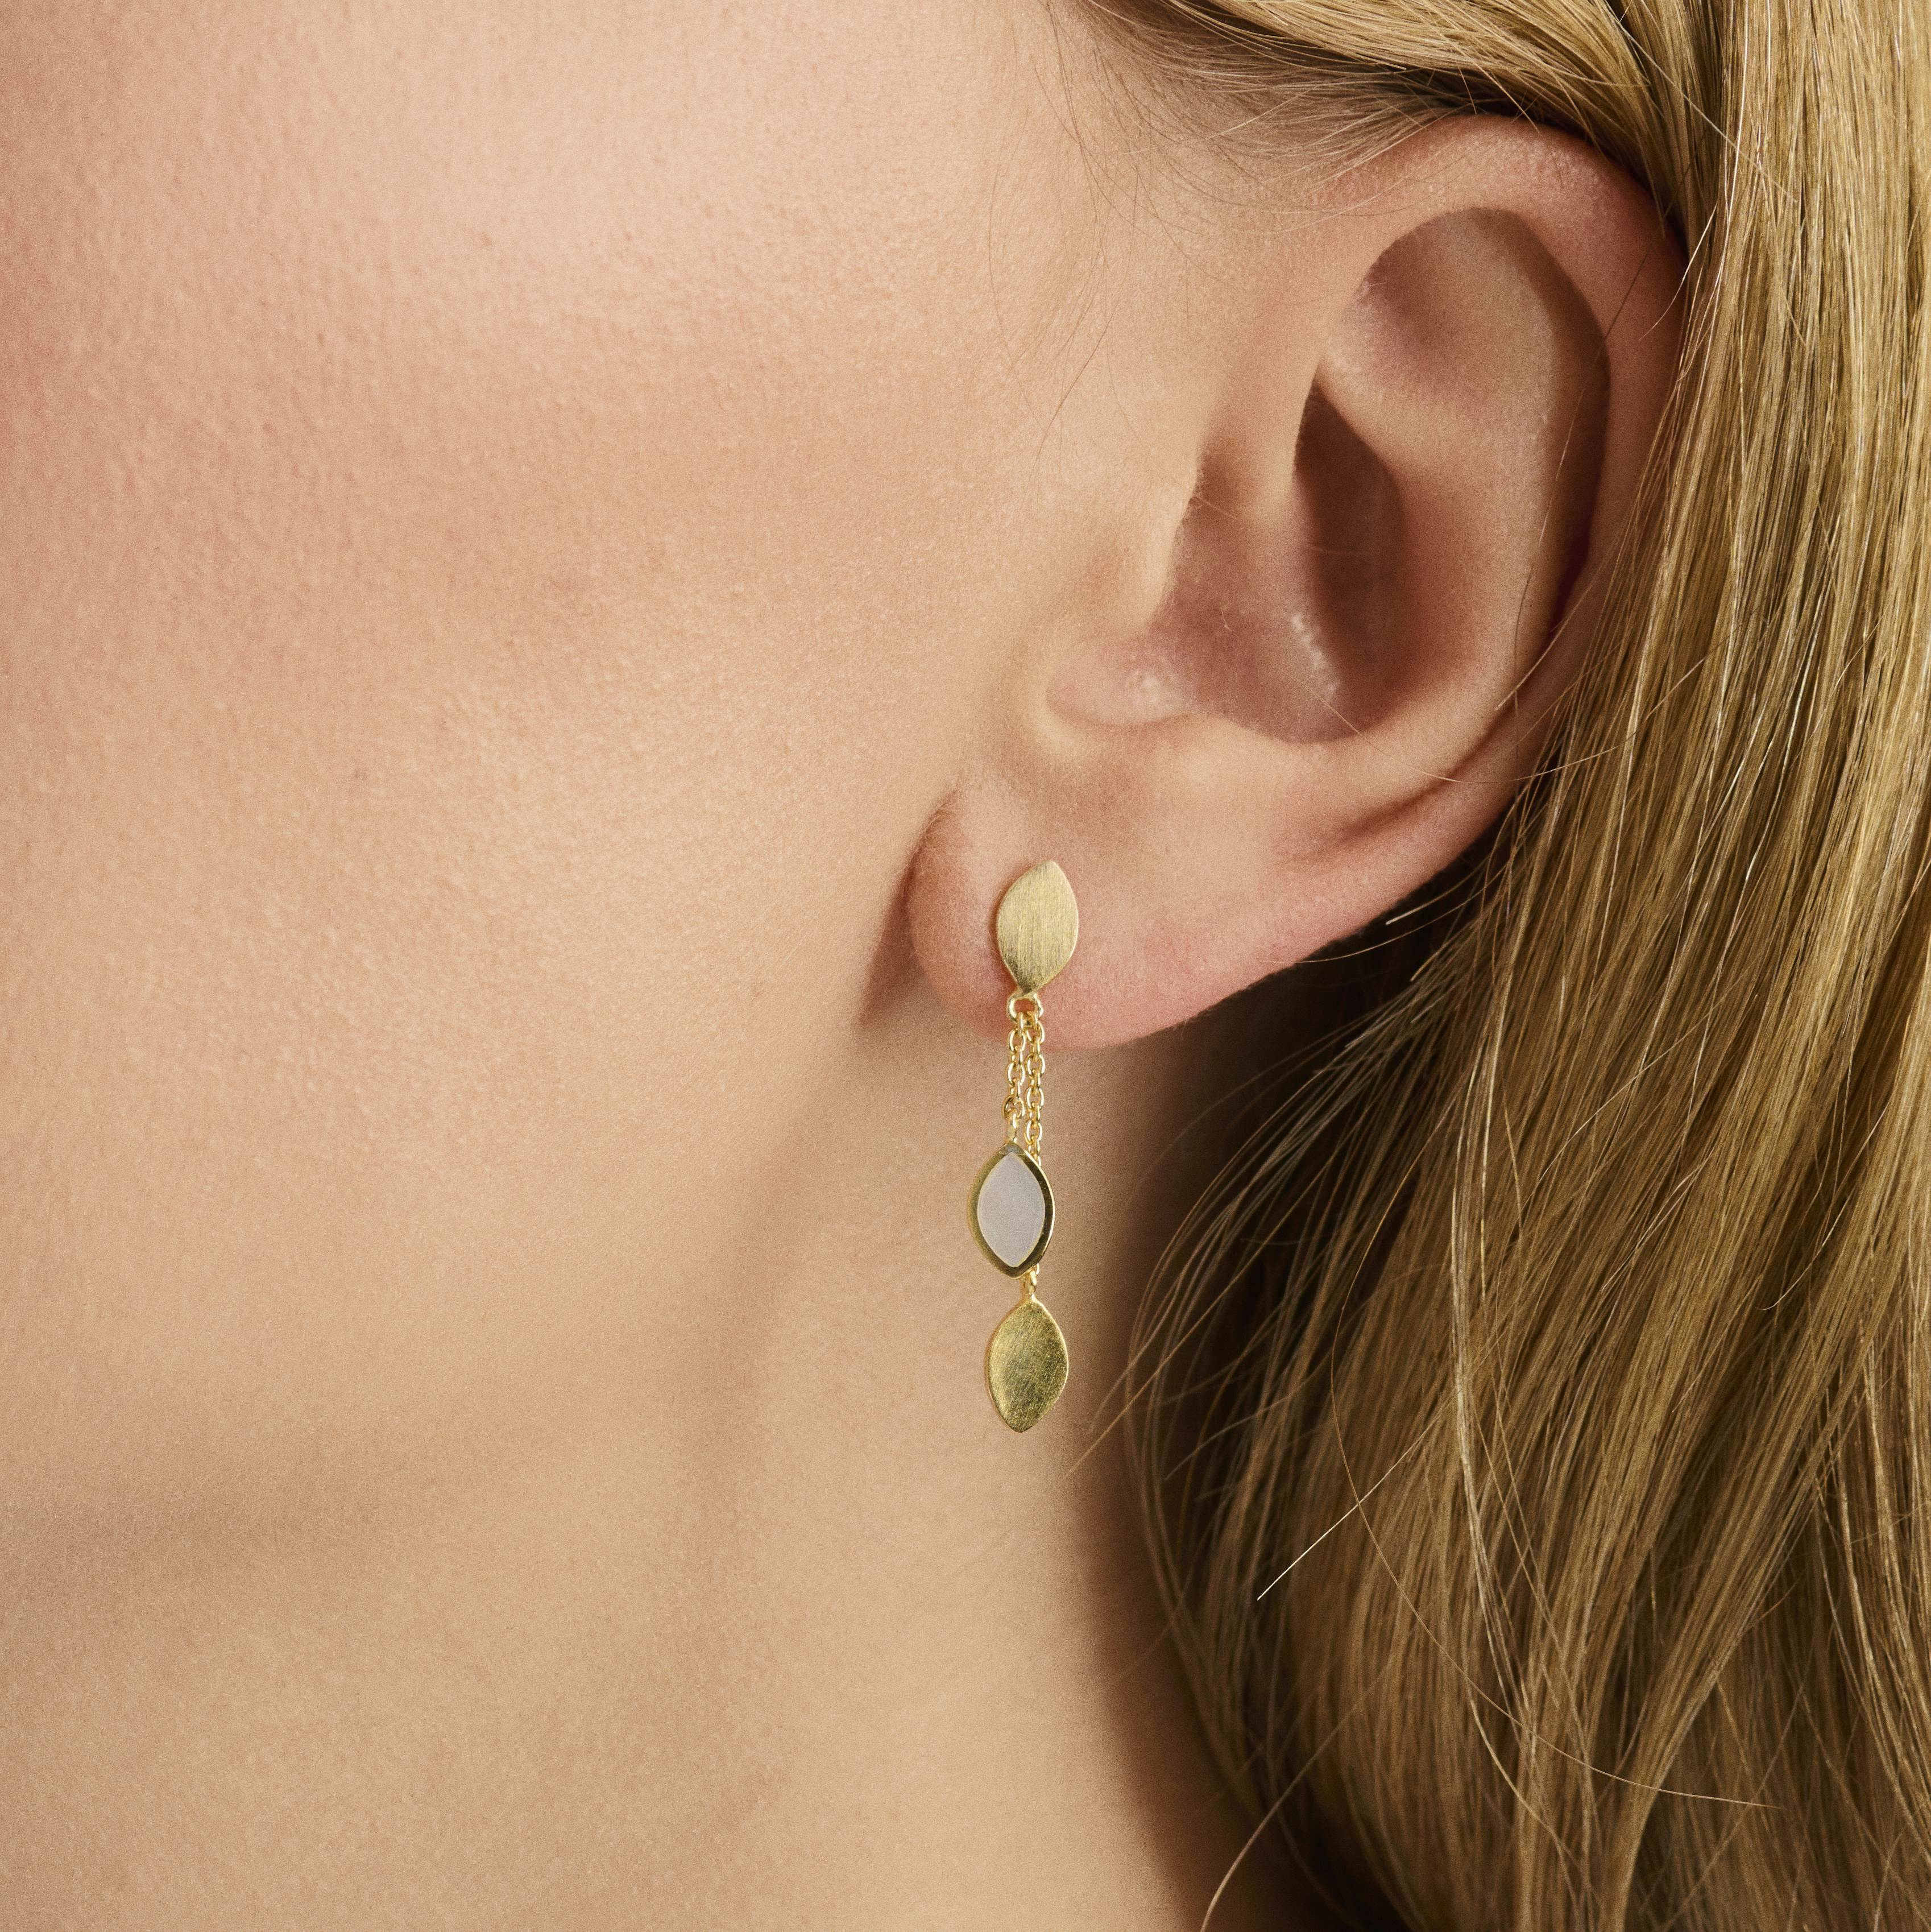 Flake Earrings from Pernille Corydon in Silver Sterling 925